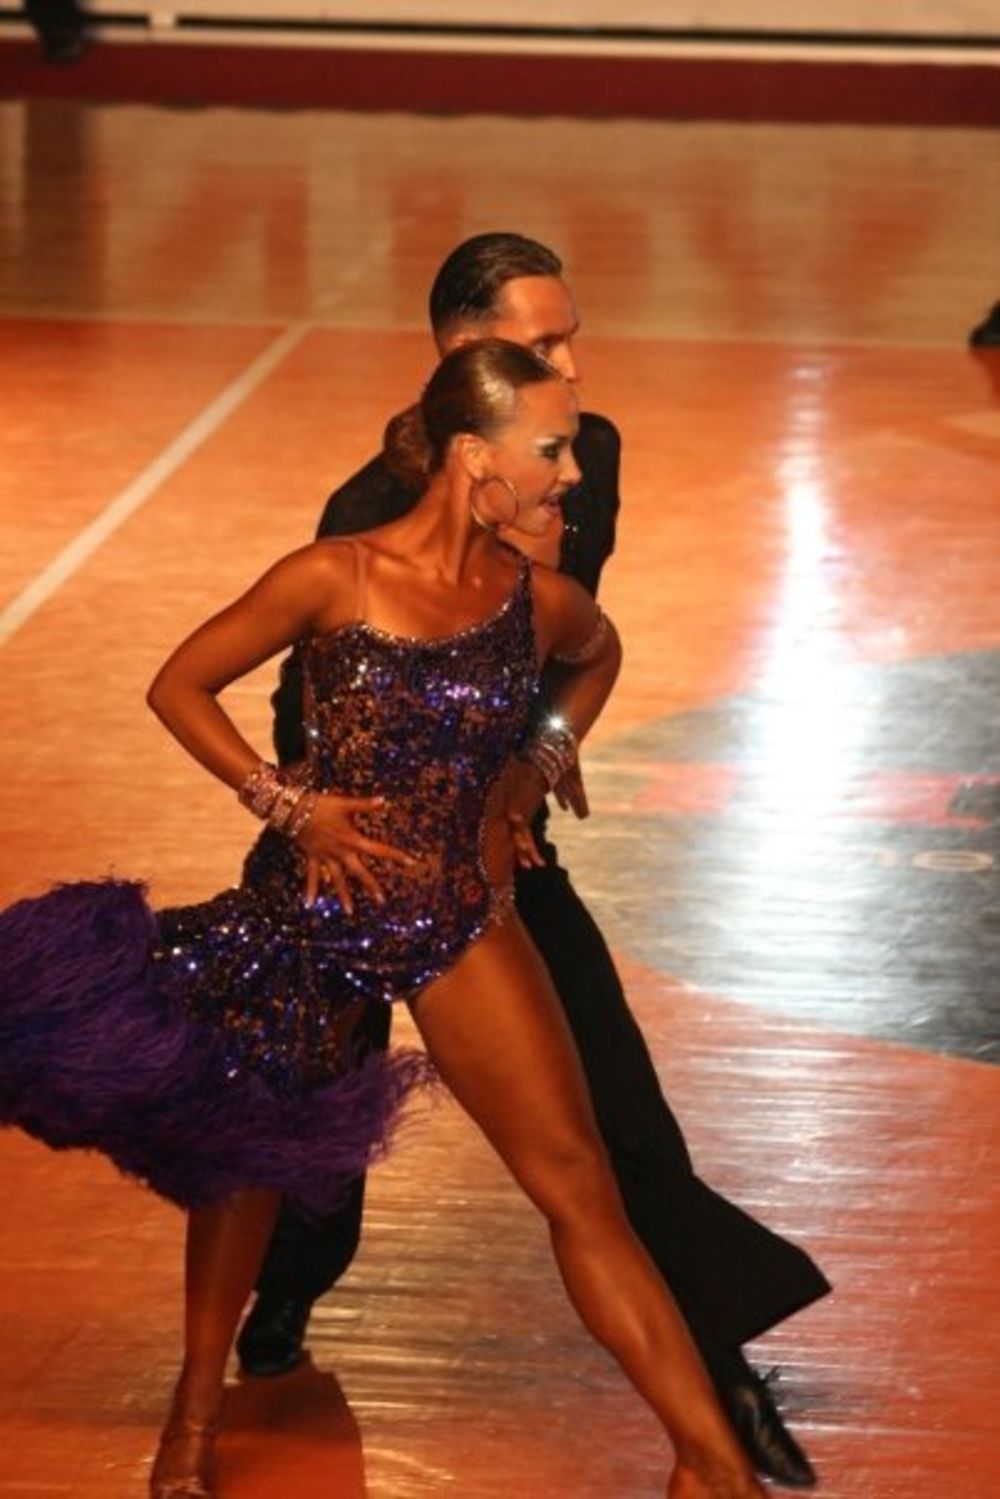 Najveće internacionalno takmičenje u sportskom plesu kod nas International Beo Dance Open 2009 biće održano 26. i 27. septembra 2009. godine u Sportskom centru Šumice. Osmi put po redu Beograd ima čast da organizuje takmičenje najvišeg ranga u ovom domenu i ug